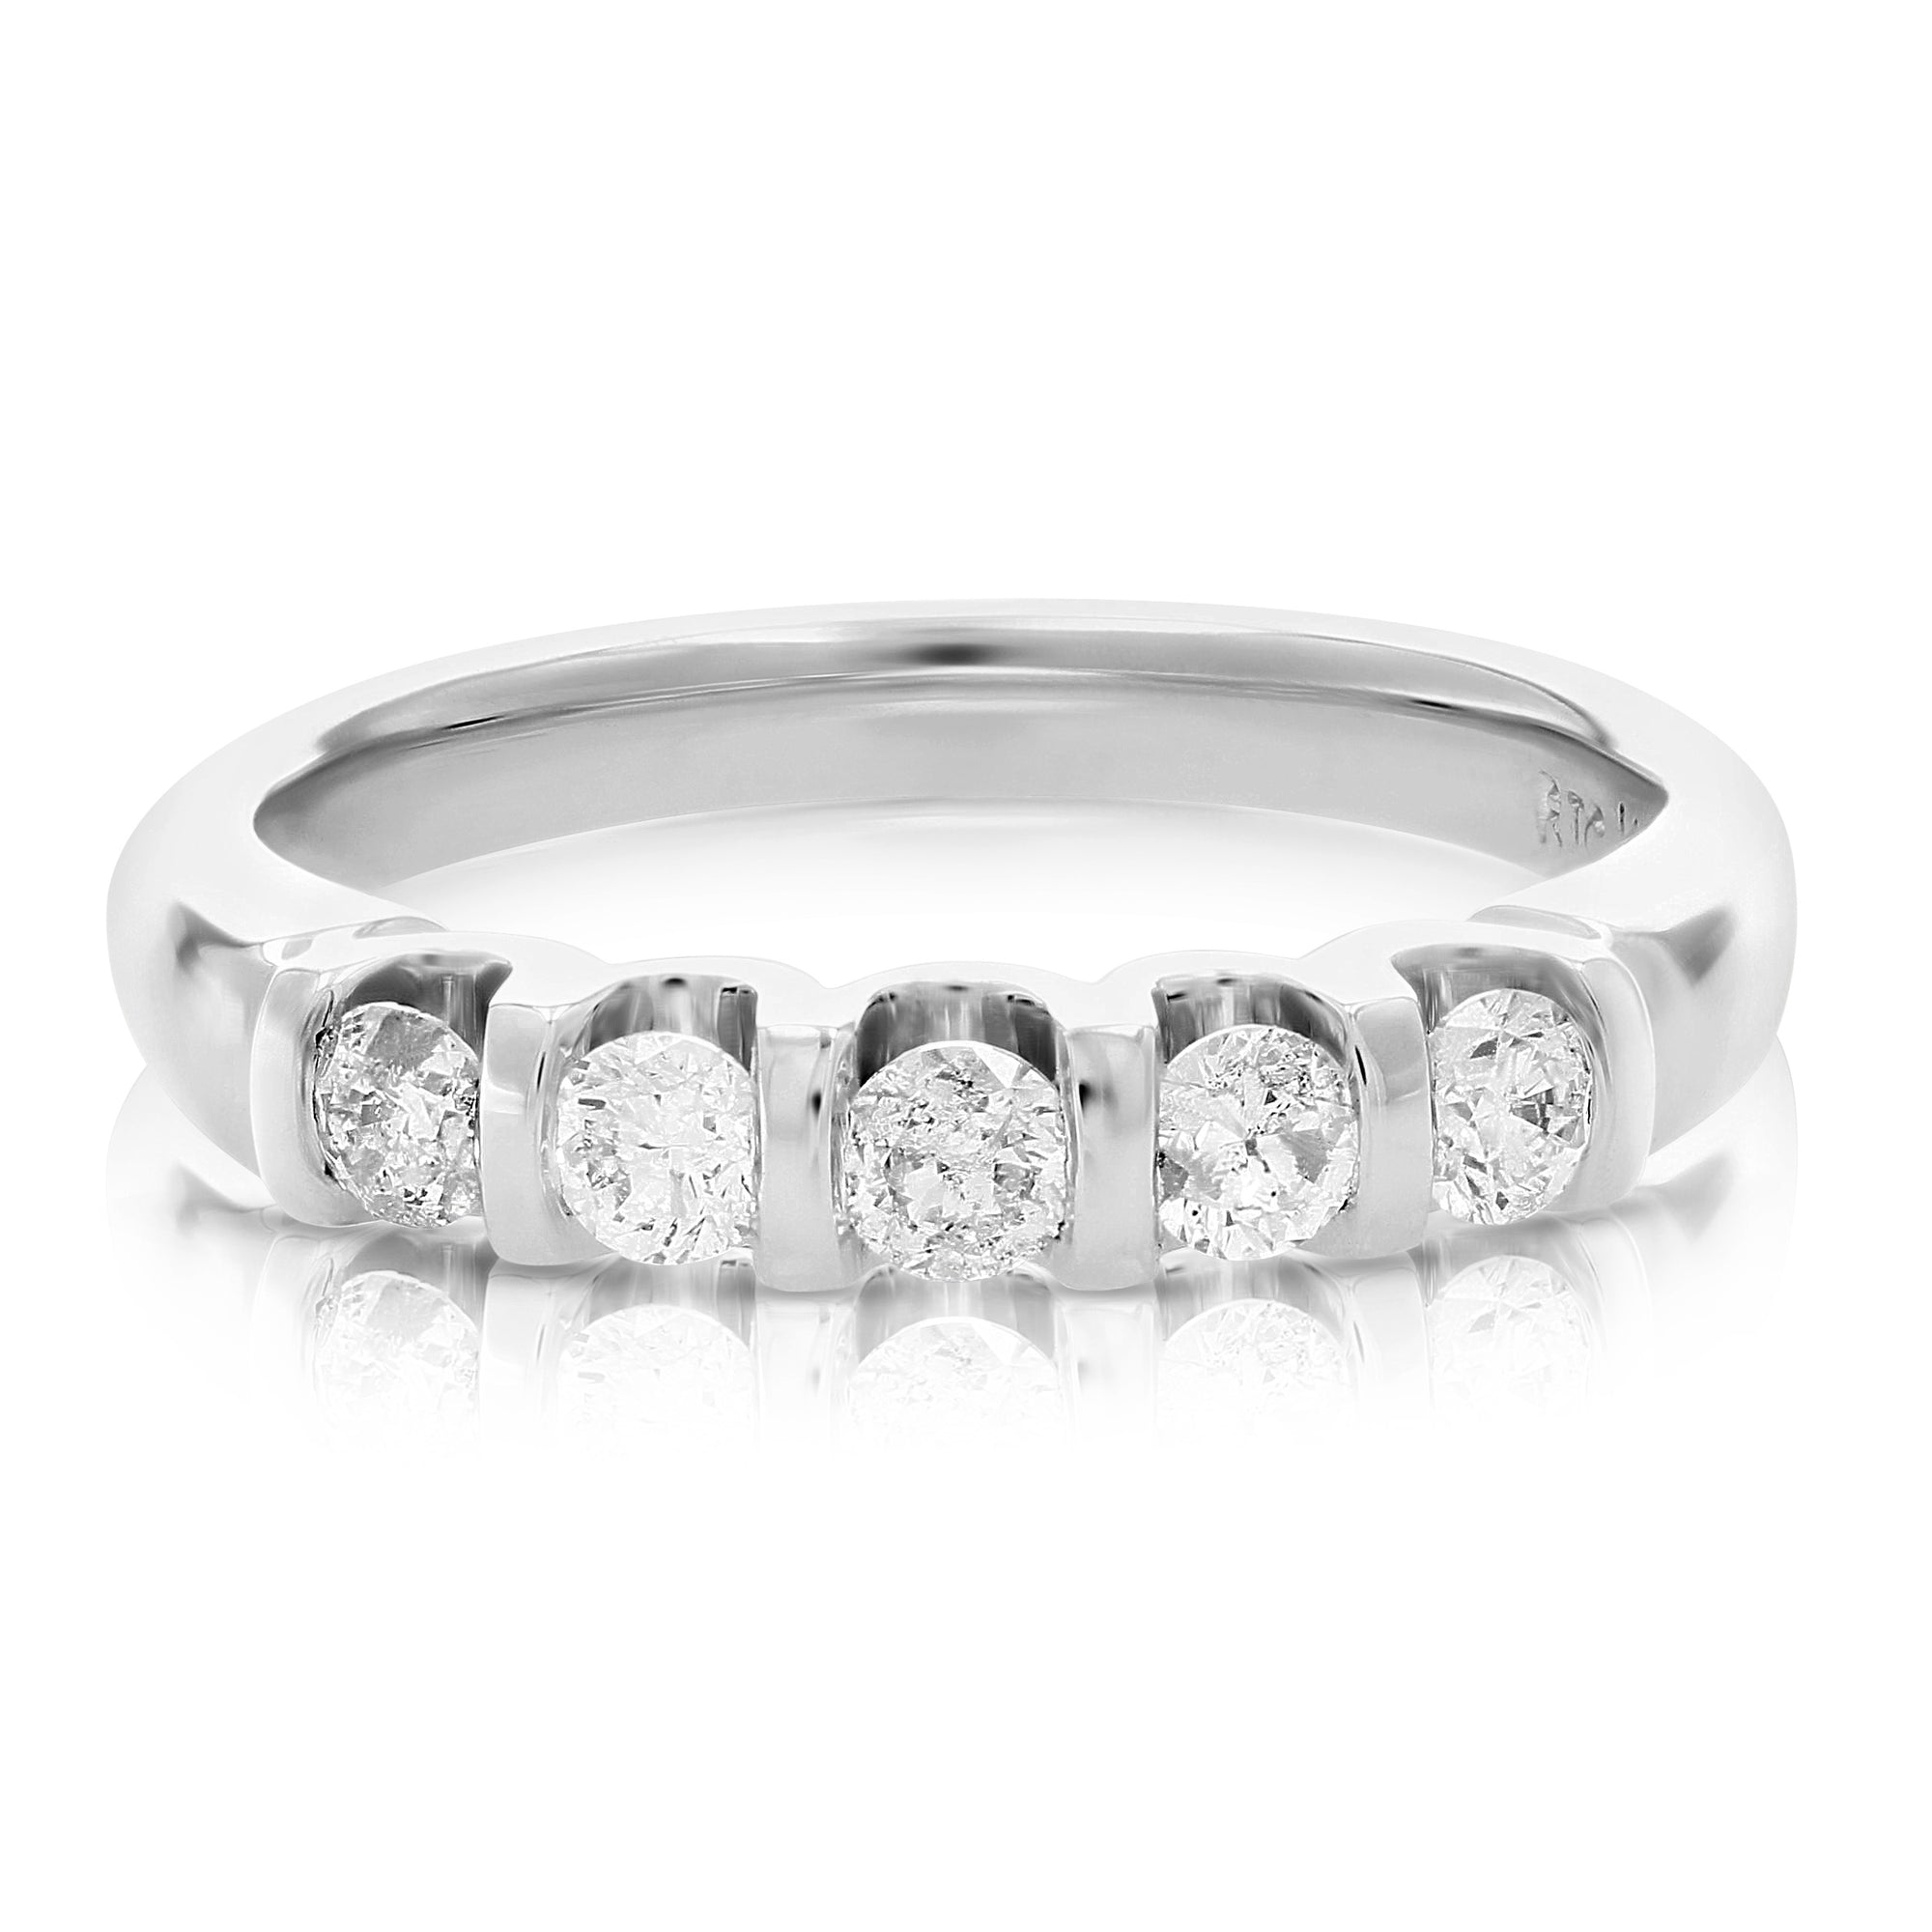 1 cttw Diamond 5 Stone Ring 14K White Gold Size 7